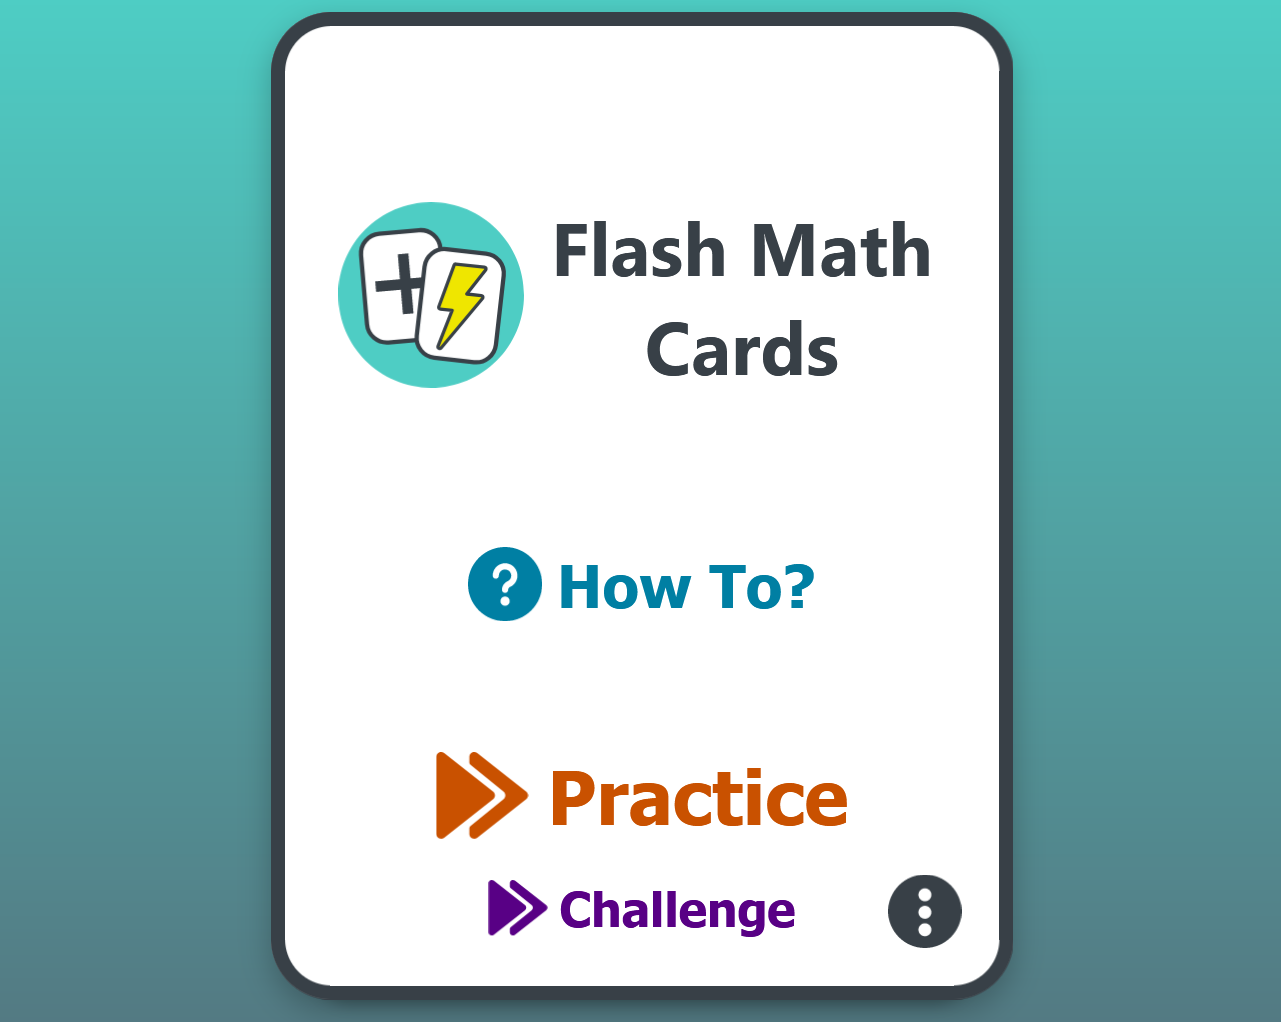 Flash Math Cards